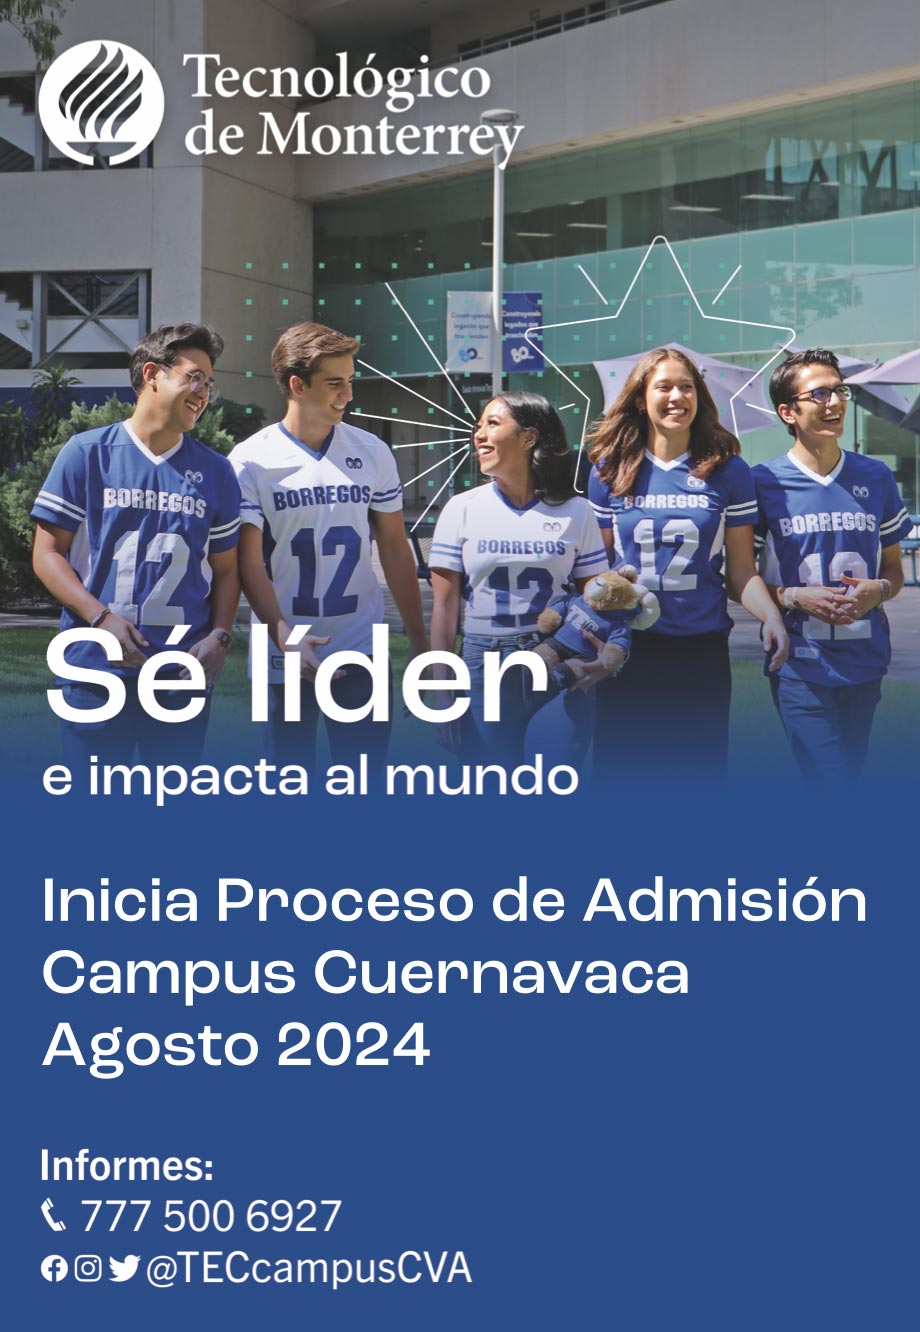 Inicia tu proceso de admisión Tec de Monterrey Campus Cuernavaca